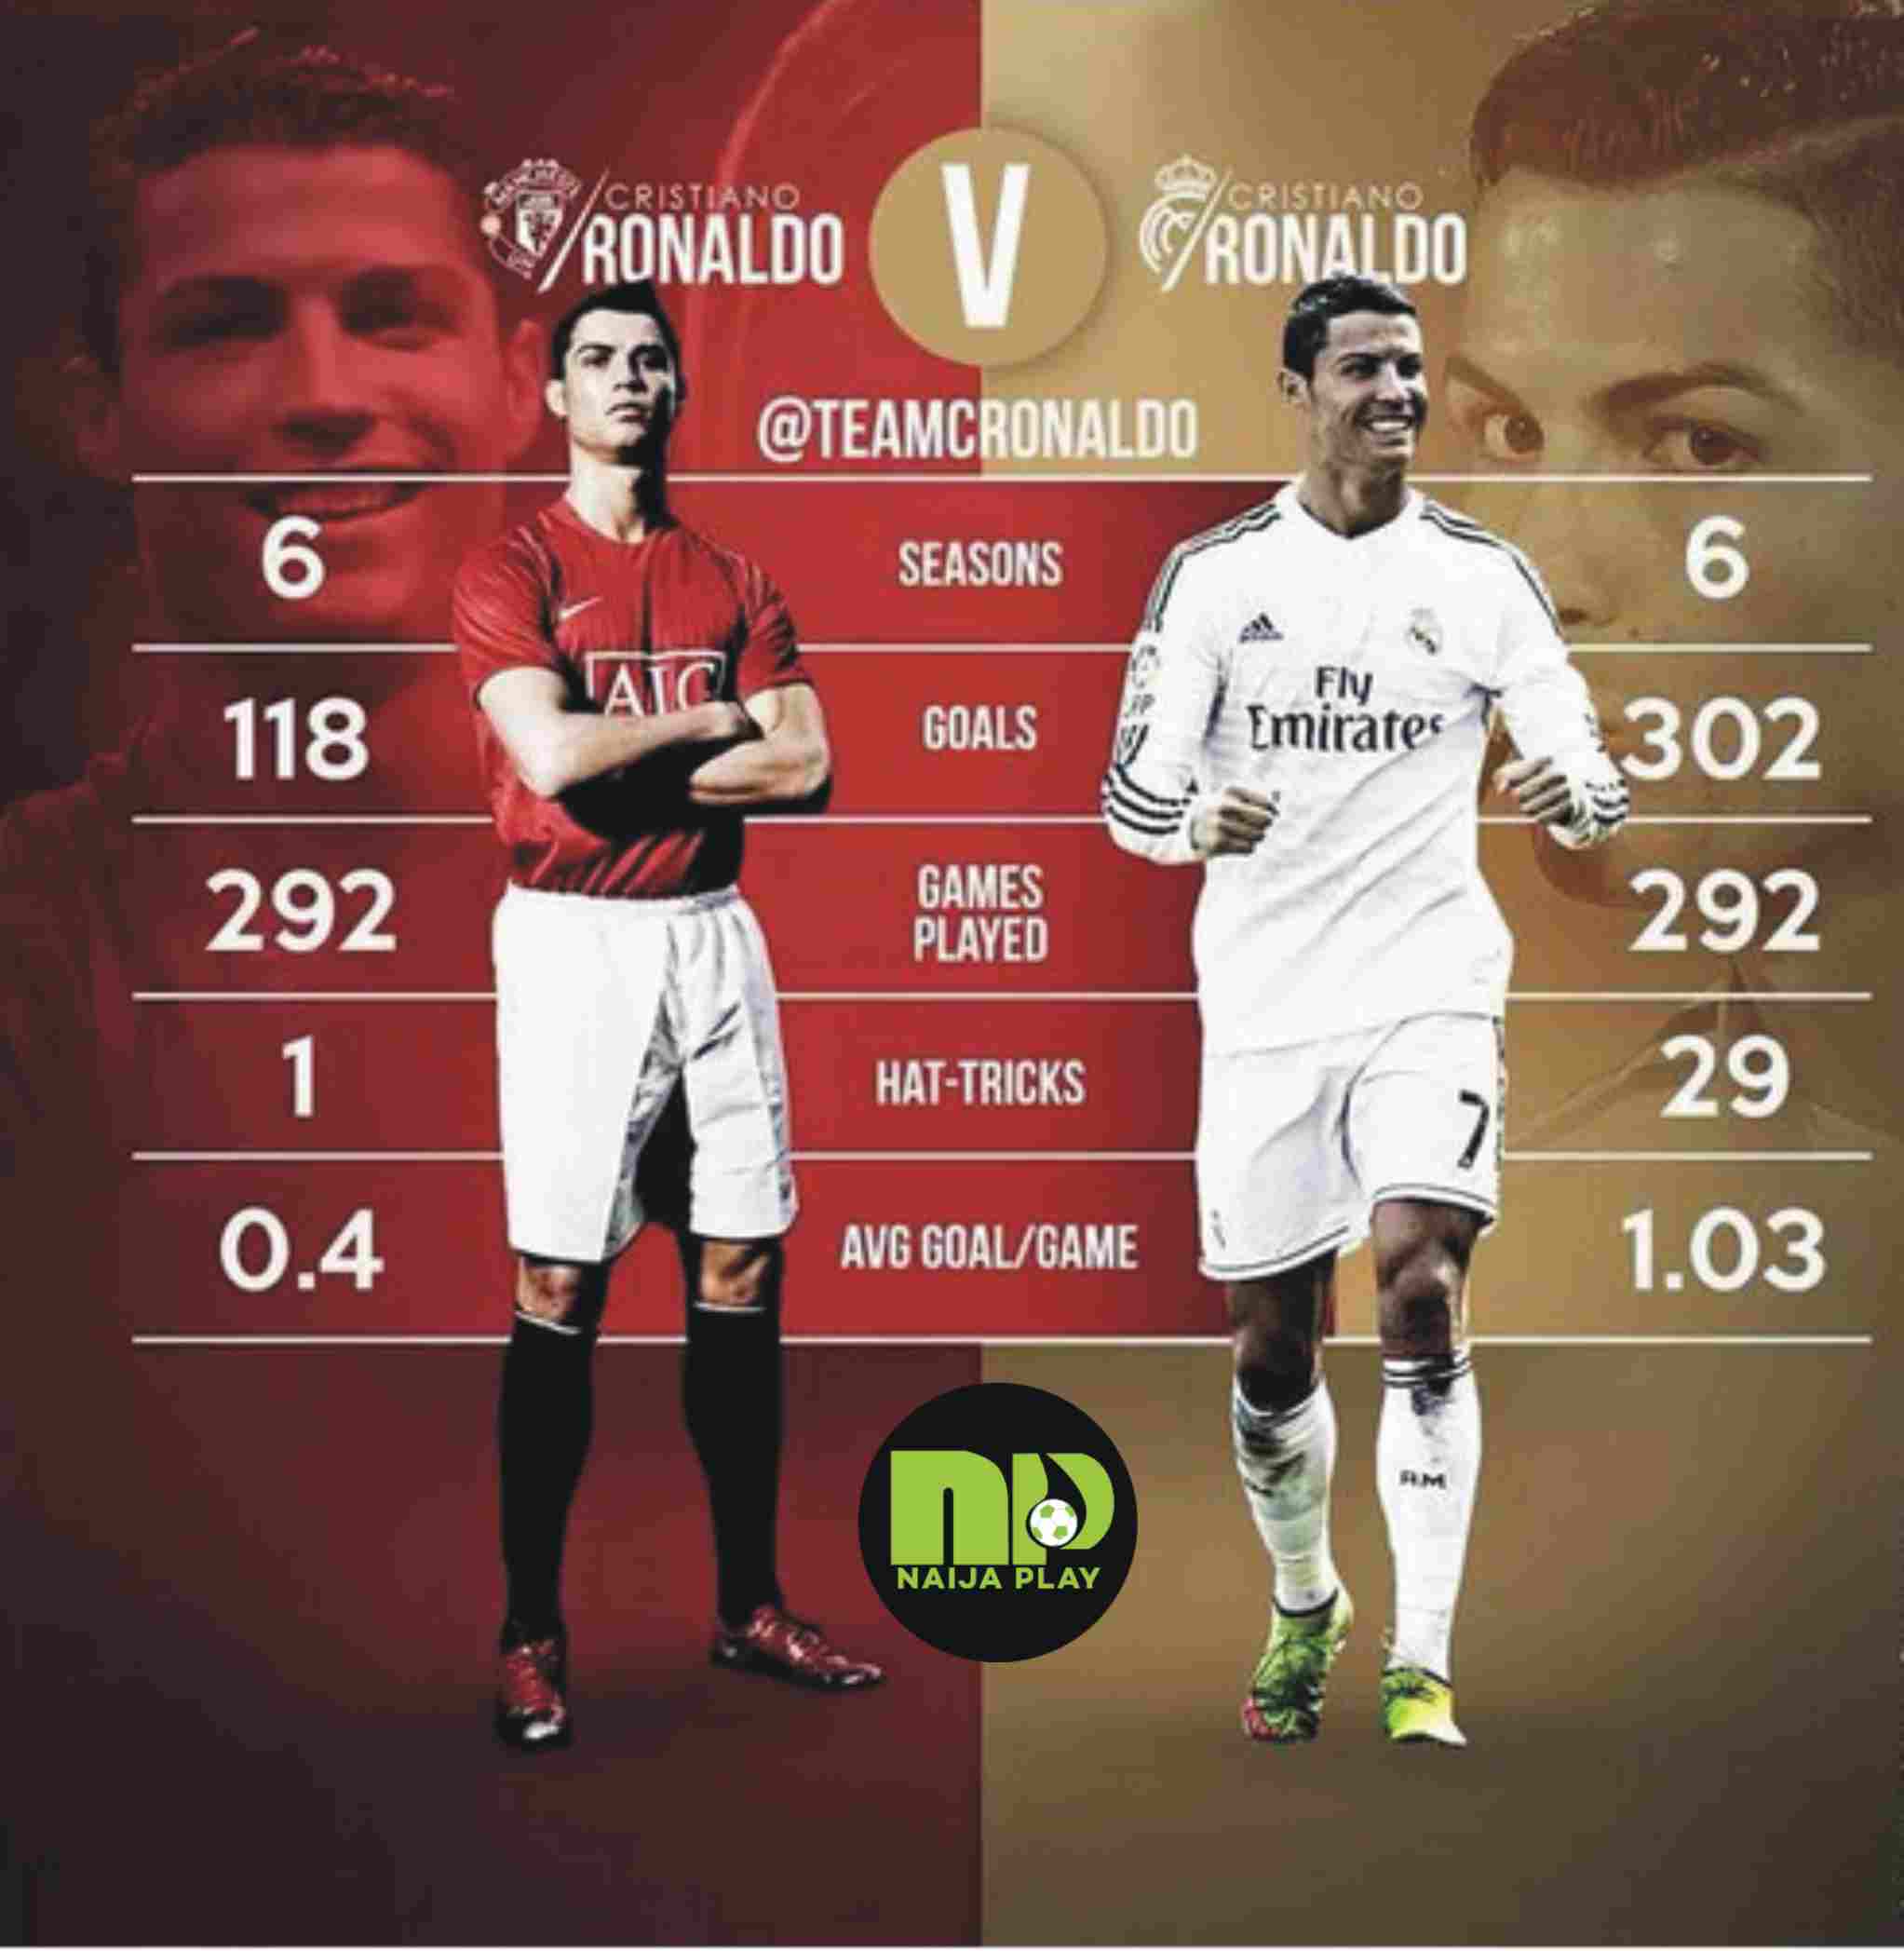 Manchester United's Cristiano Ronaldo Vs Real Madrid's Cristiano